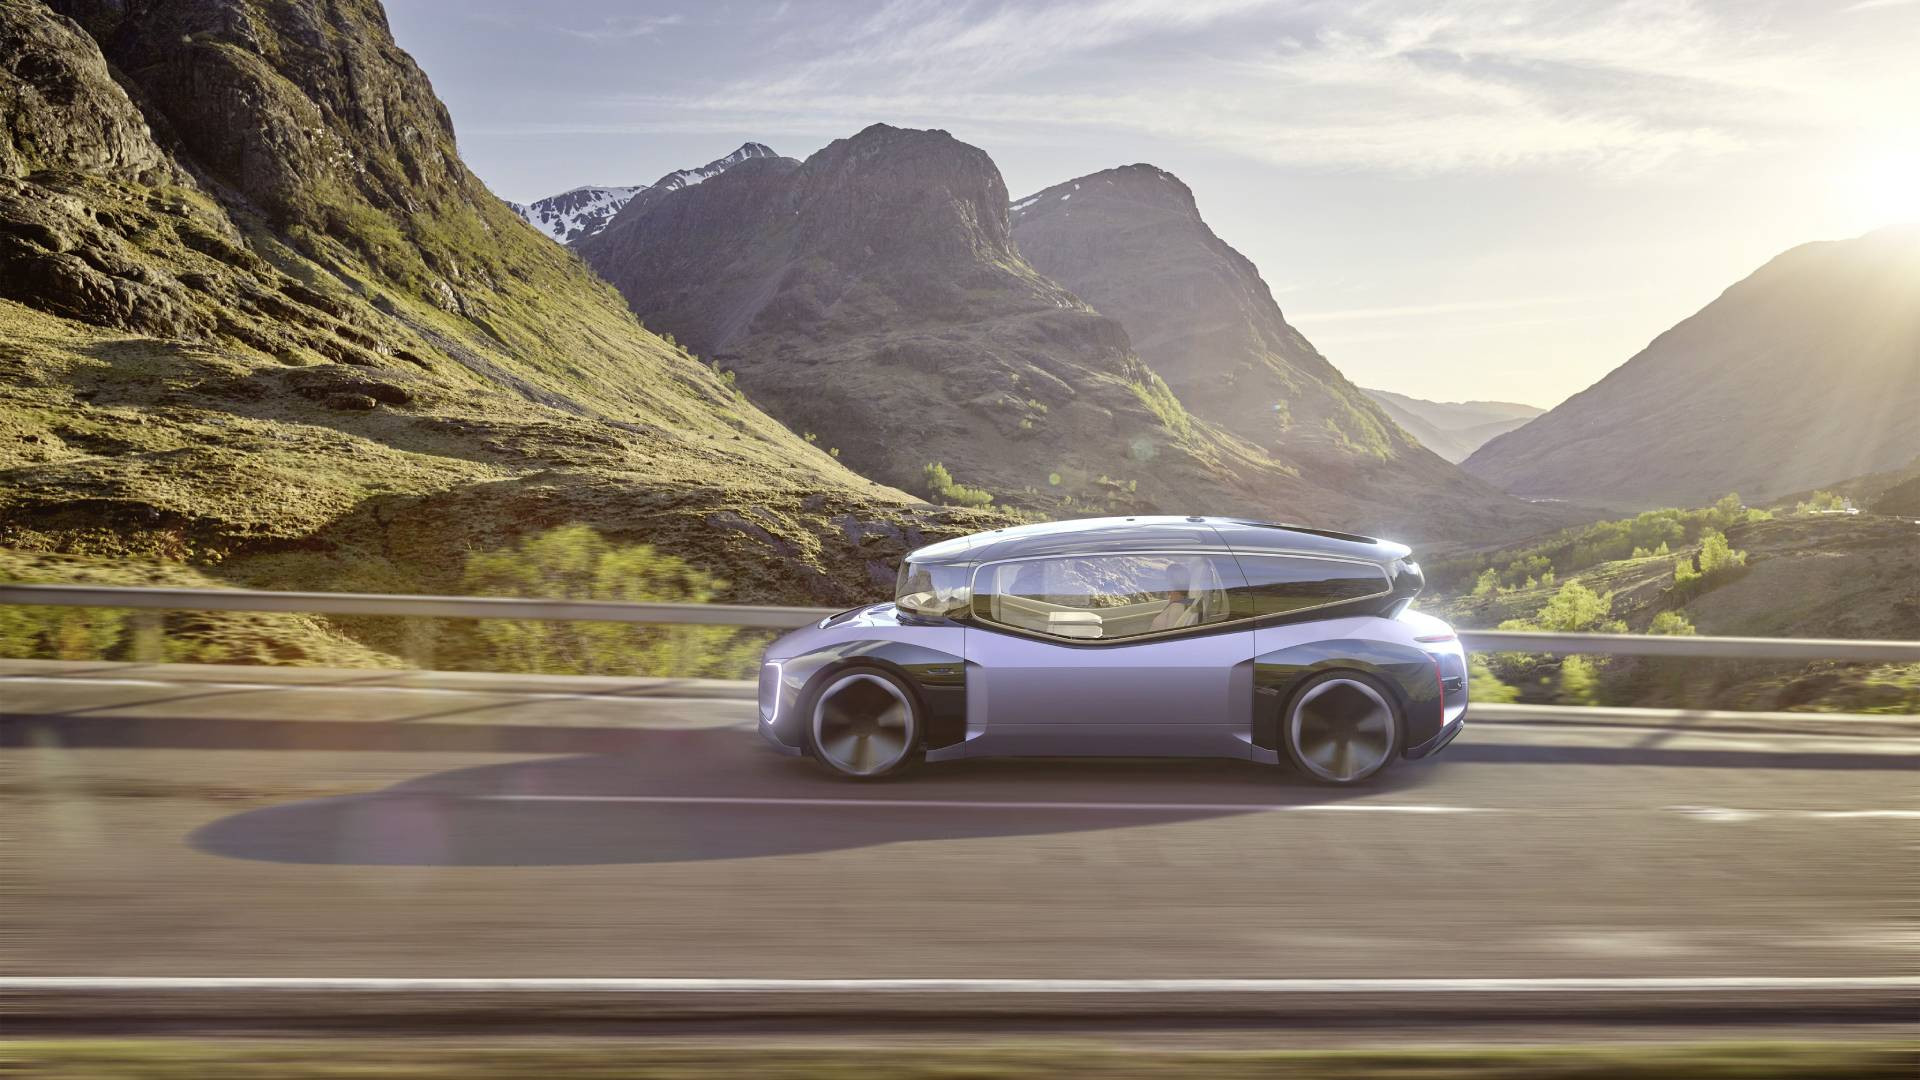 Autonom Autofahren – VW präsentiert die Designstudie Gen.Travel